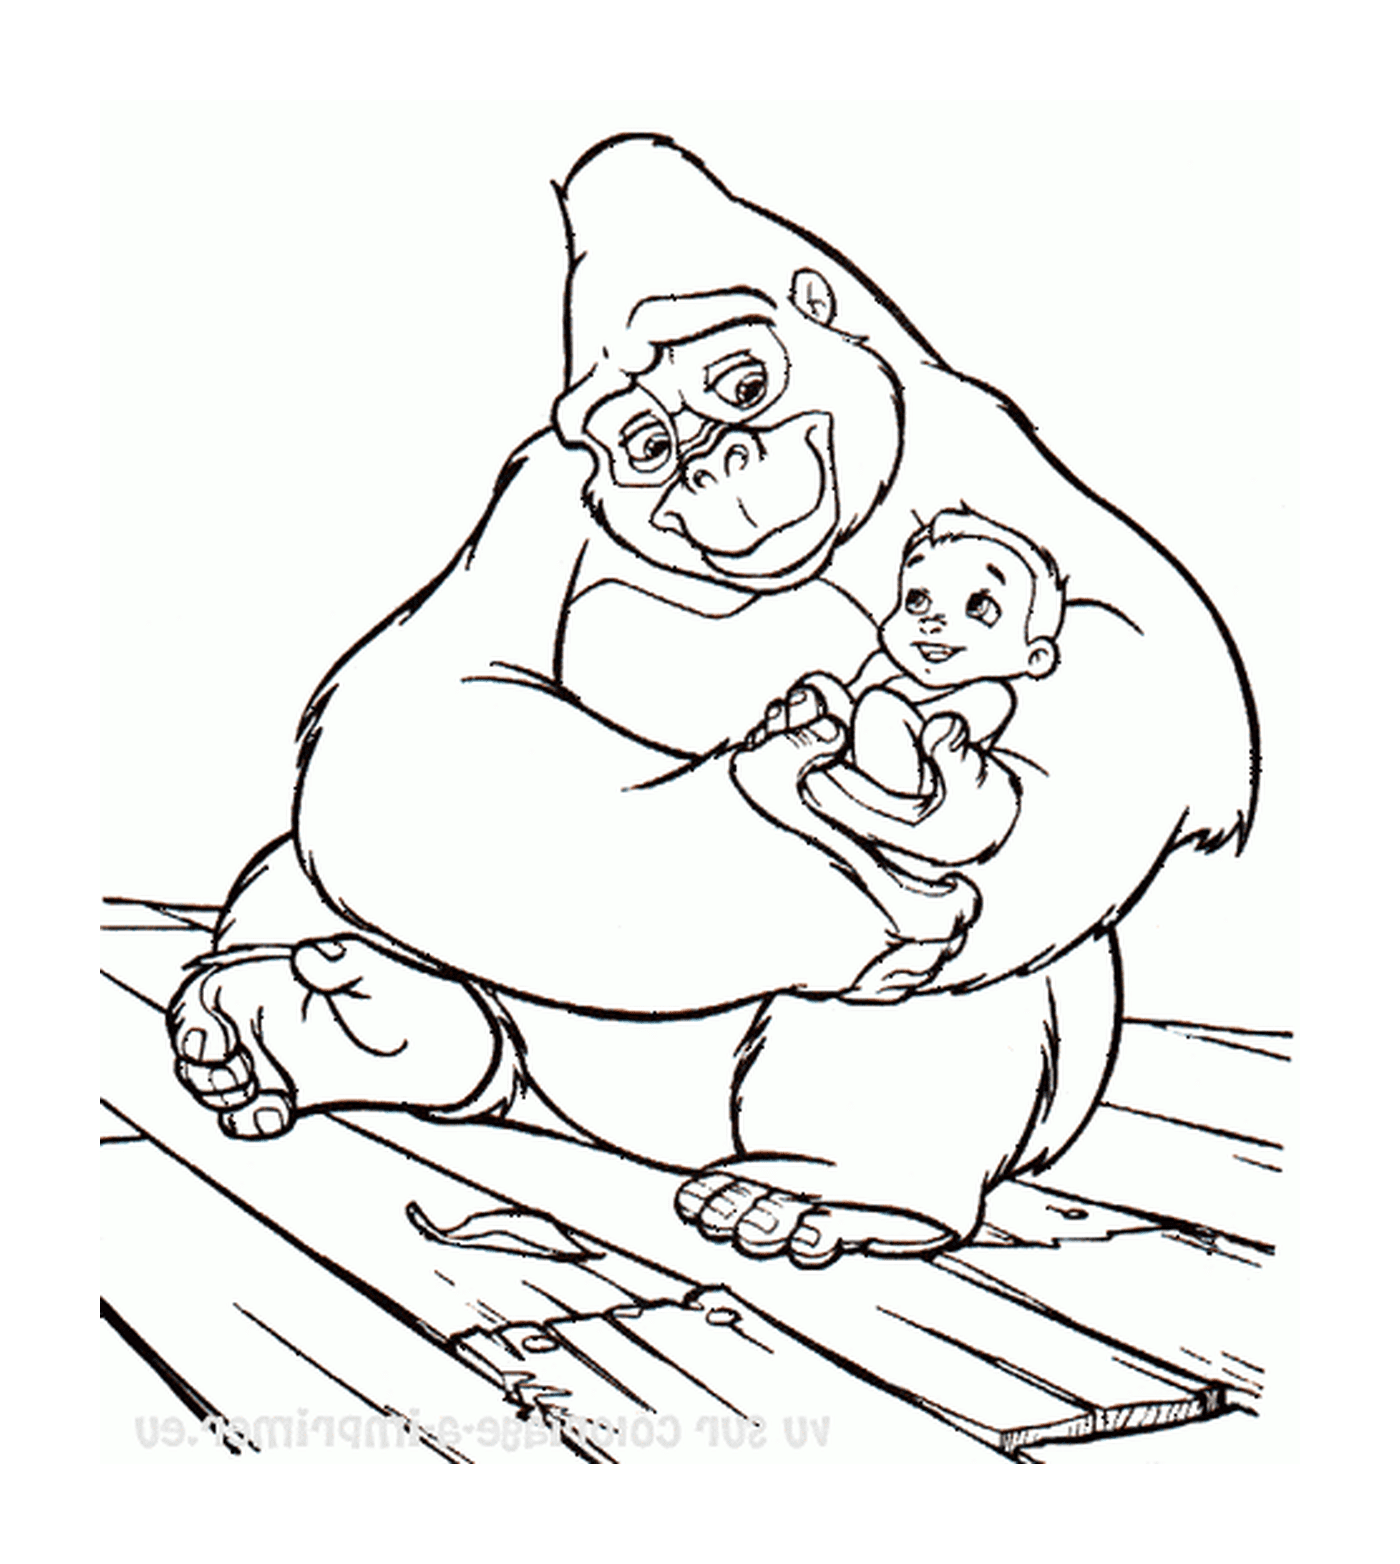  Erwachsene Gorilla hält ein Baby in ihren Armen 